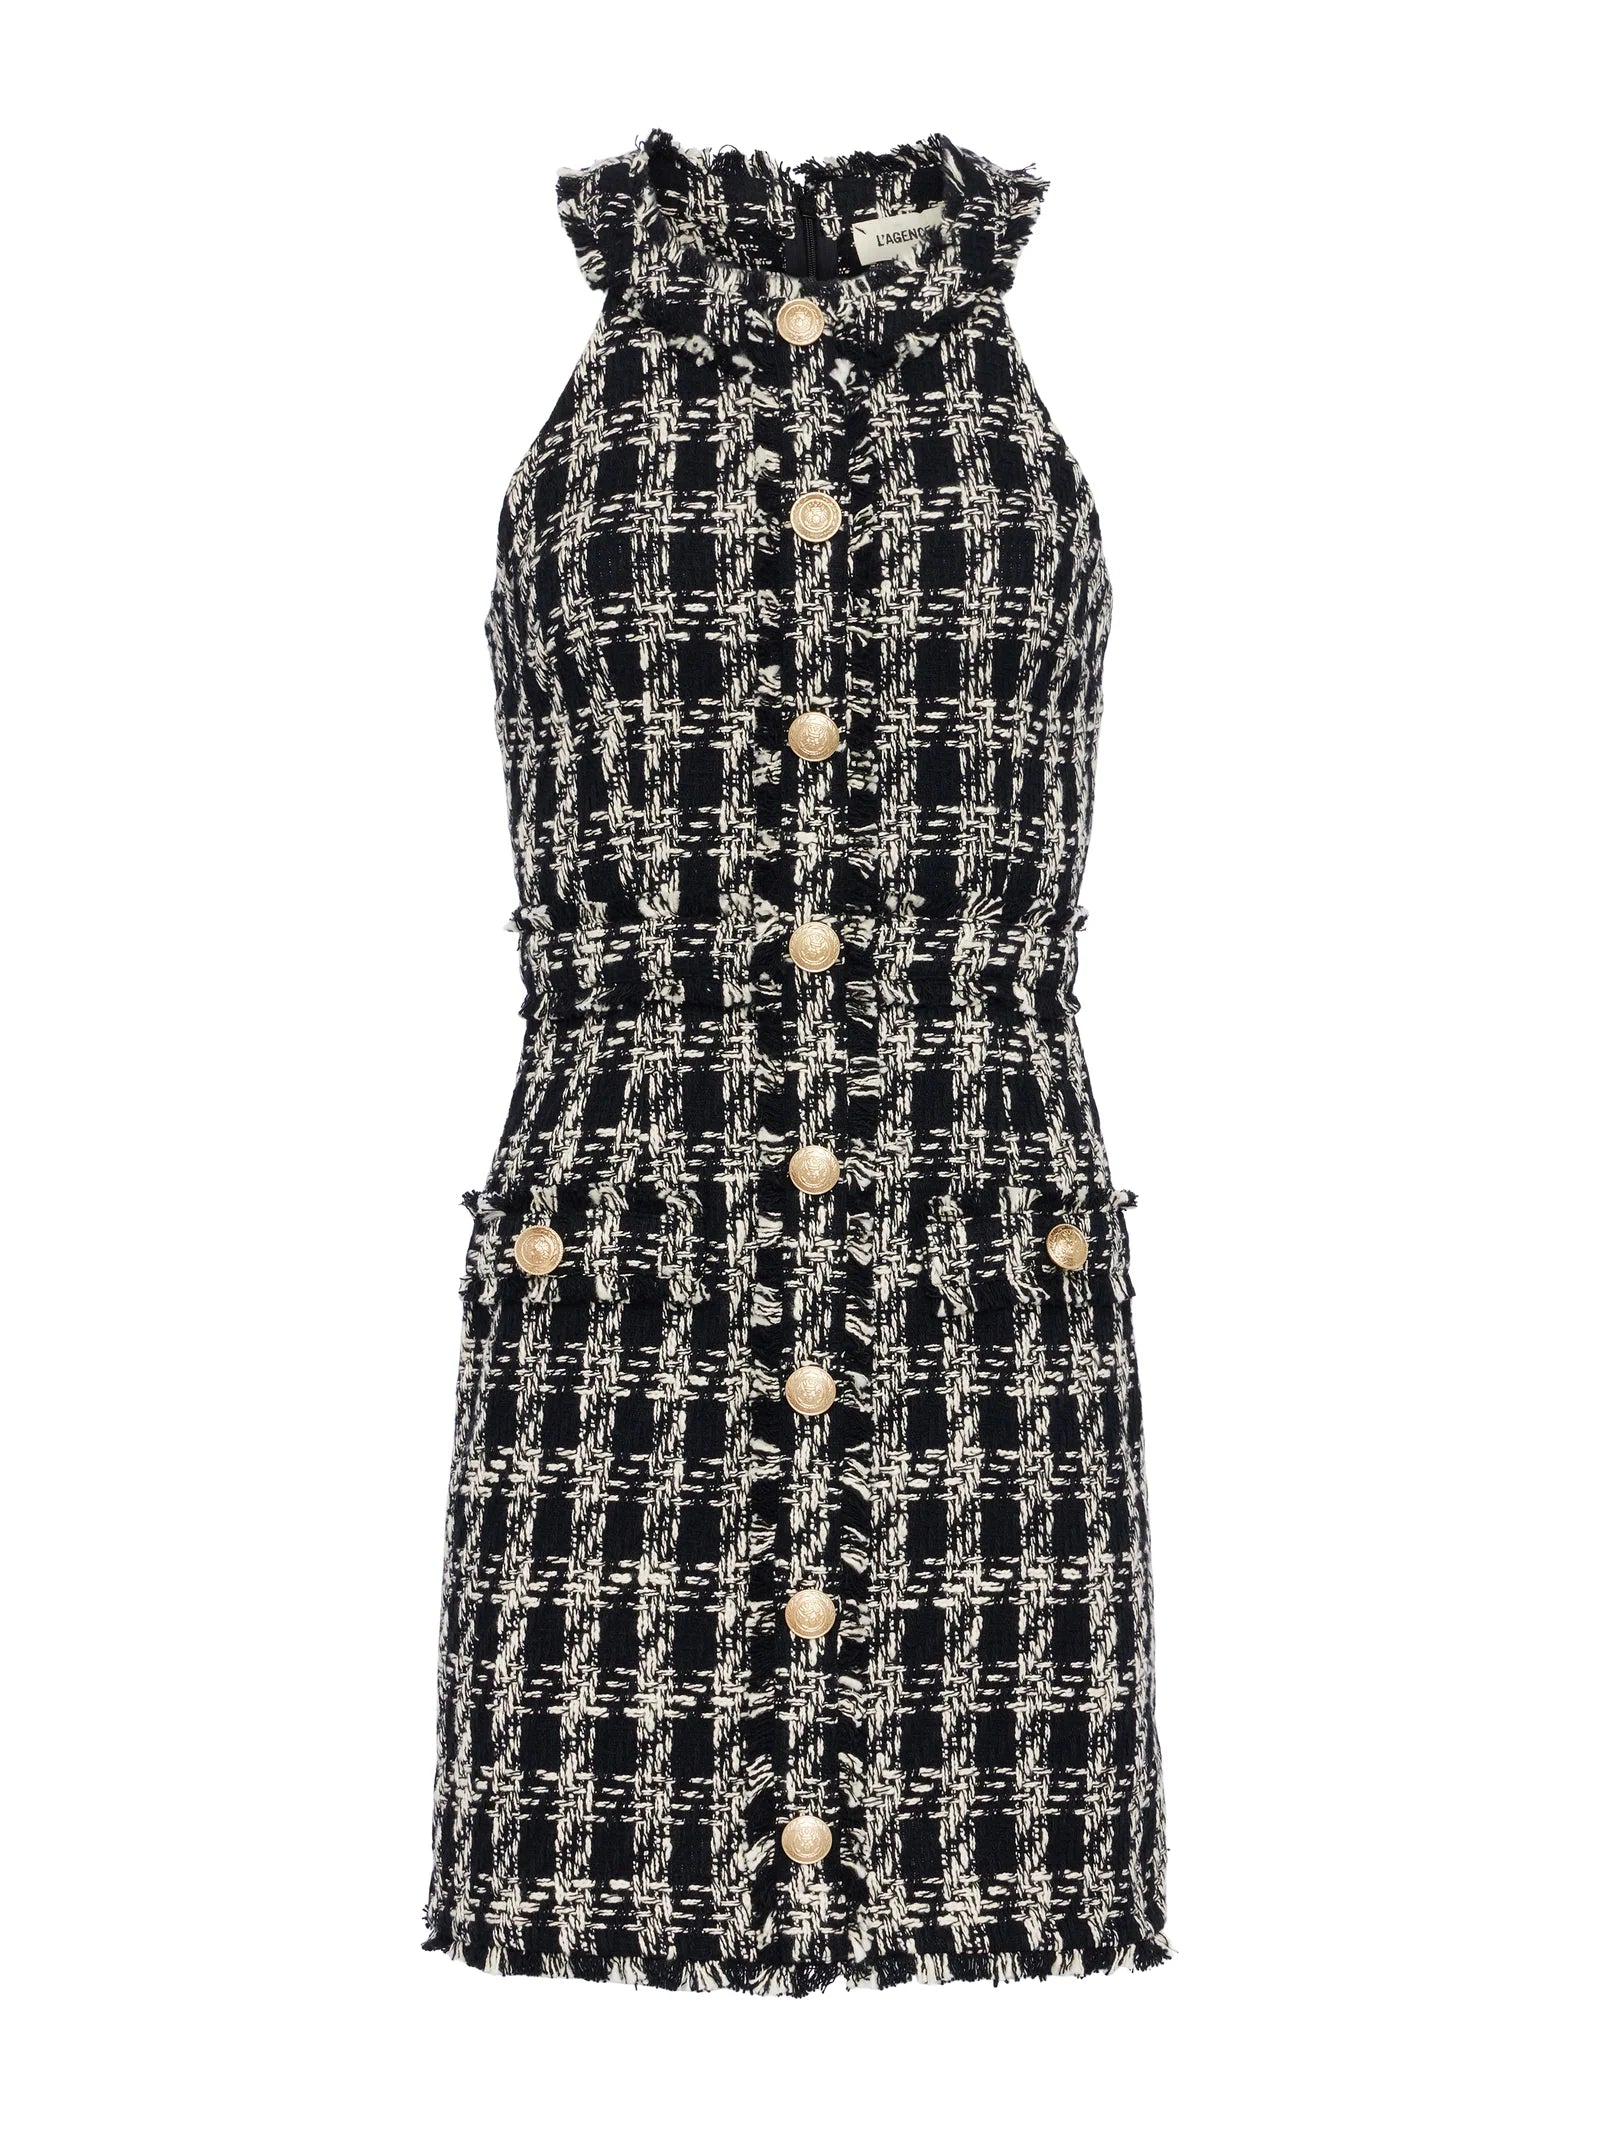 Jade Tweed Dress Black Ivory Plaid Tweed - L'AGENCE – Jackie Z Style Co.